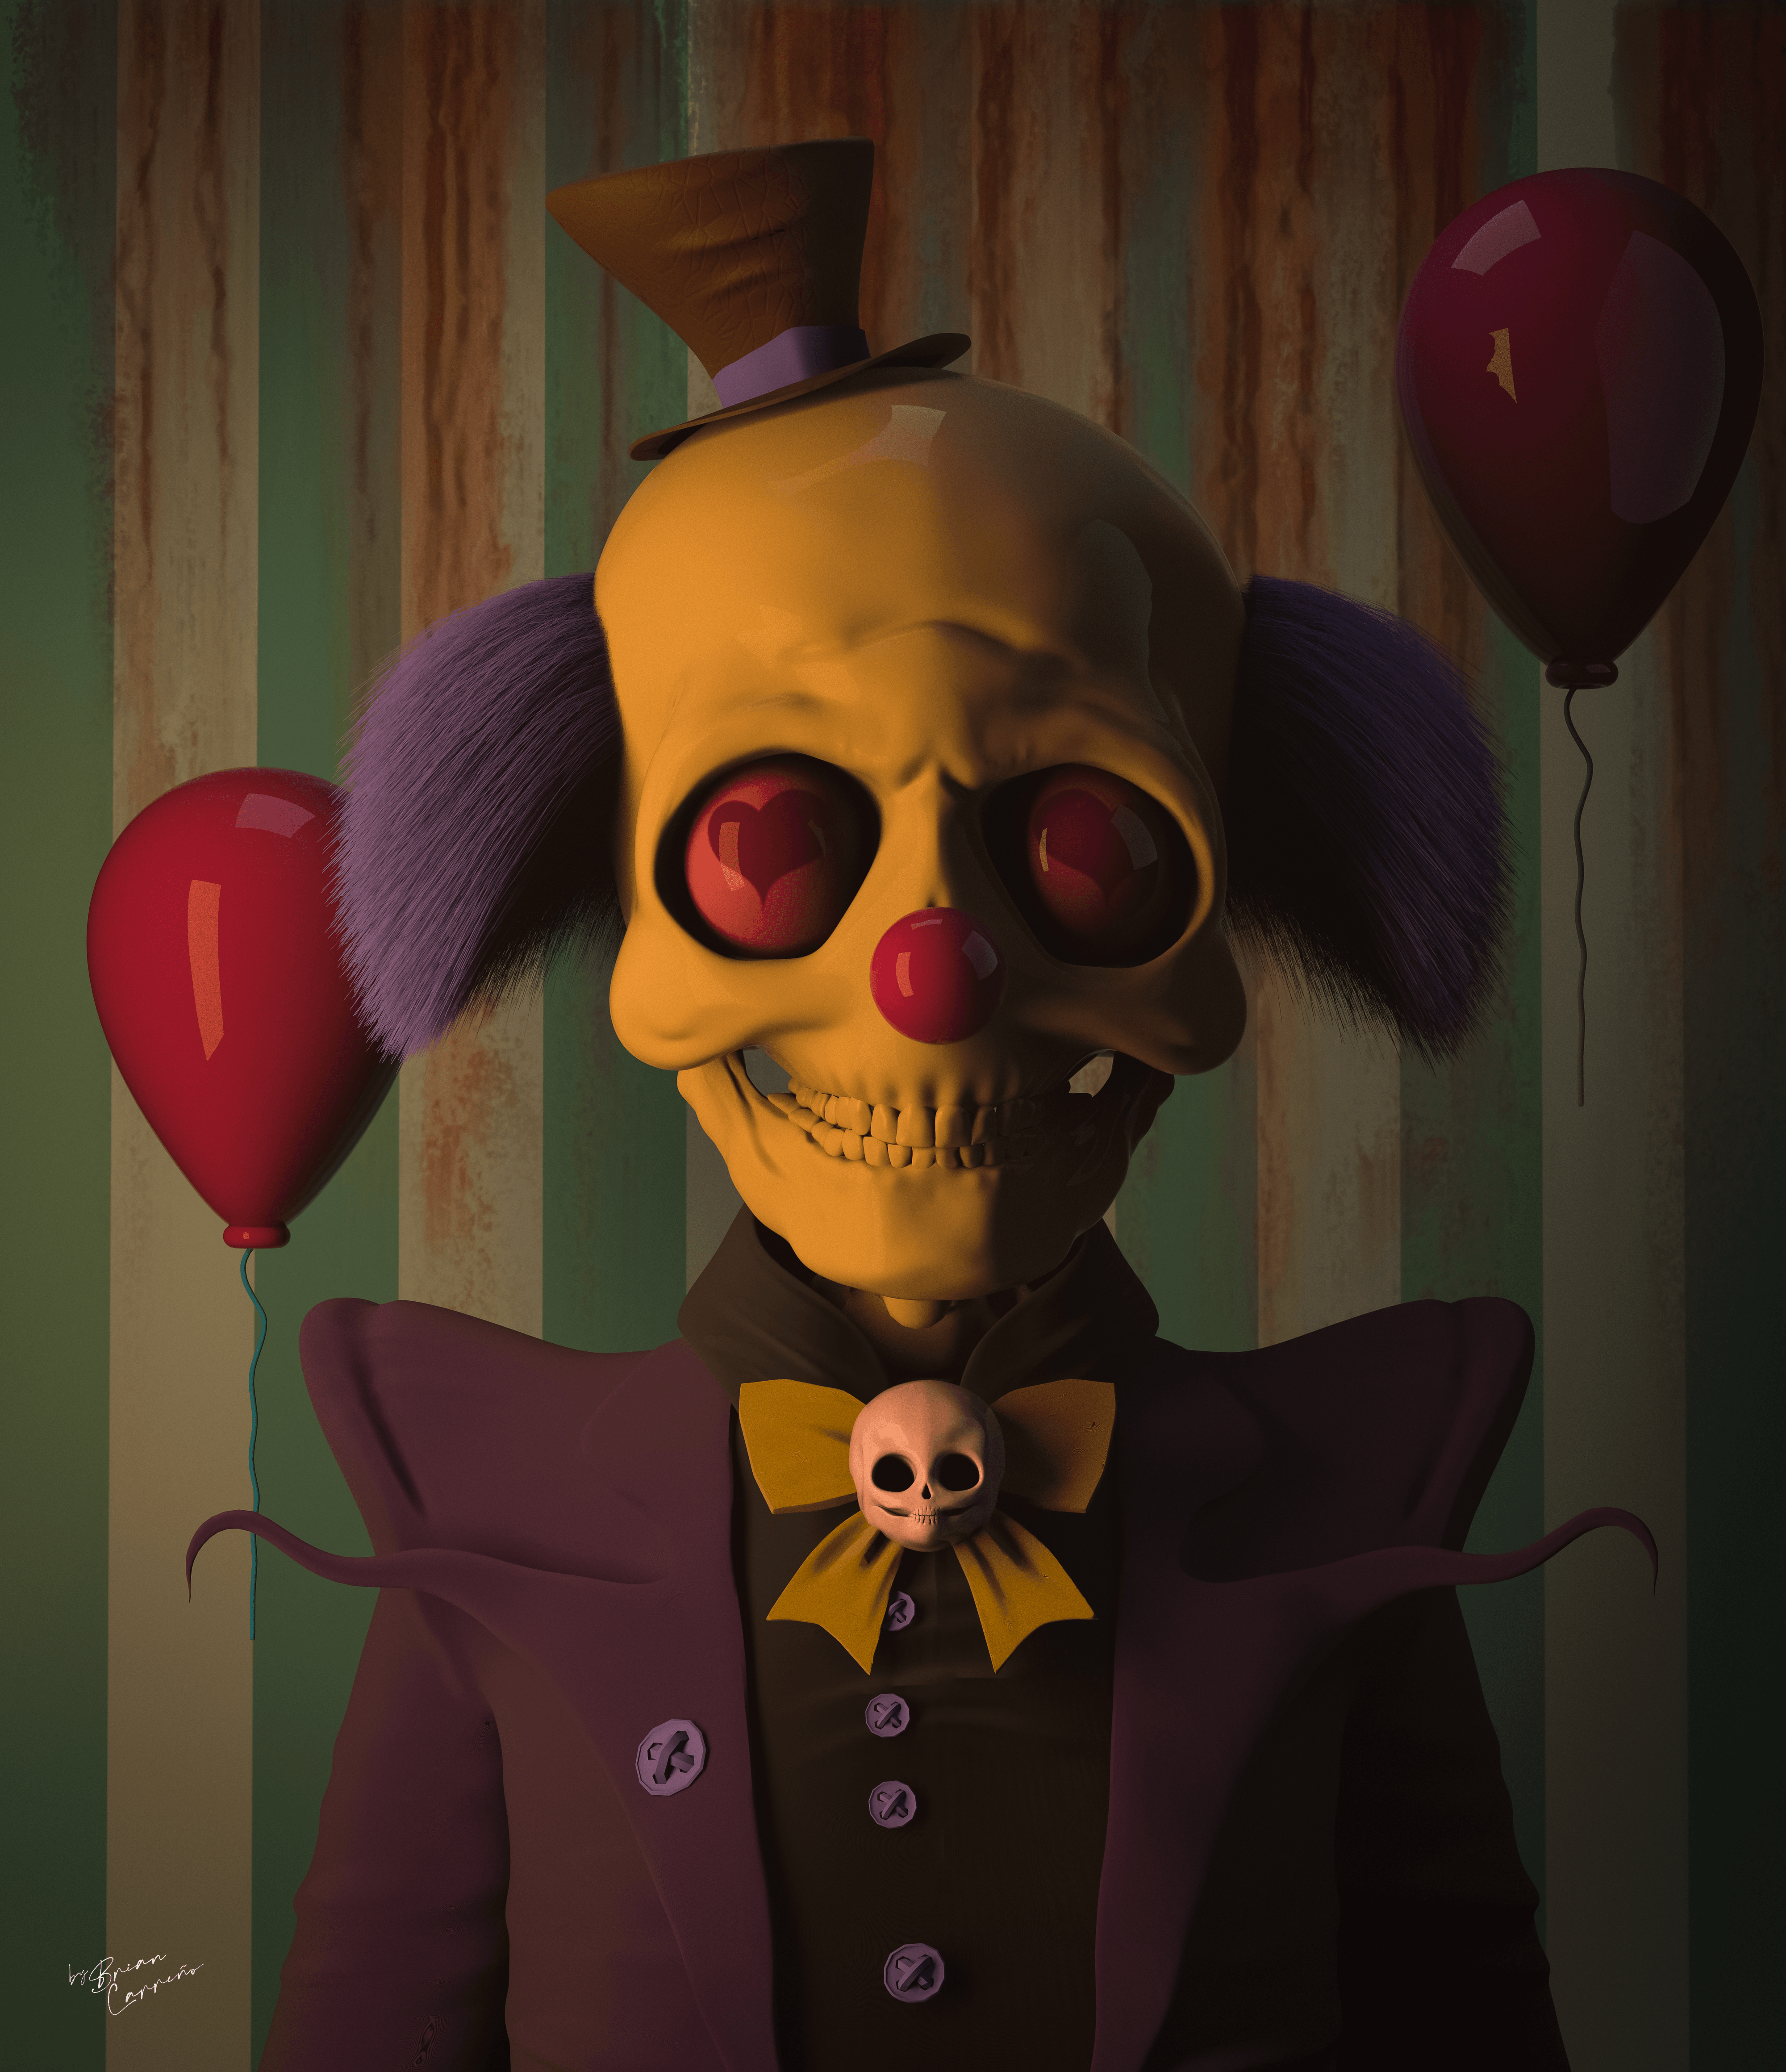 Mr. clown